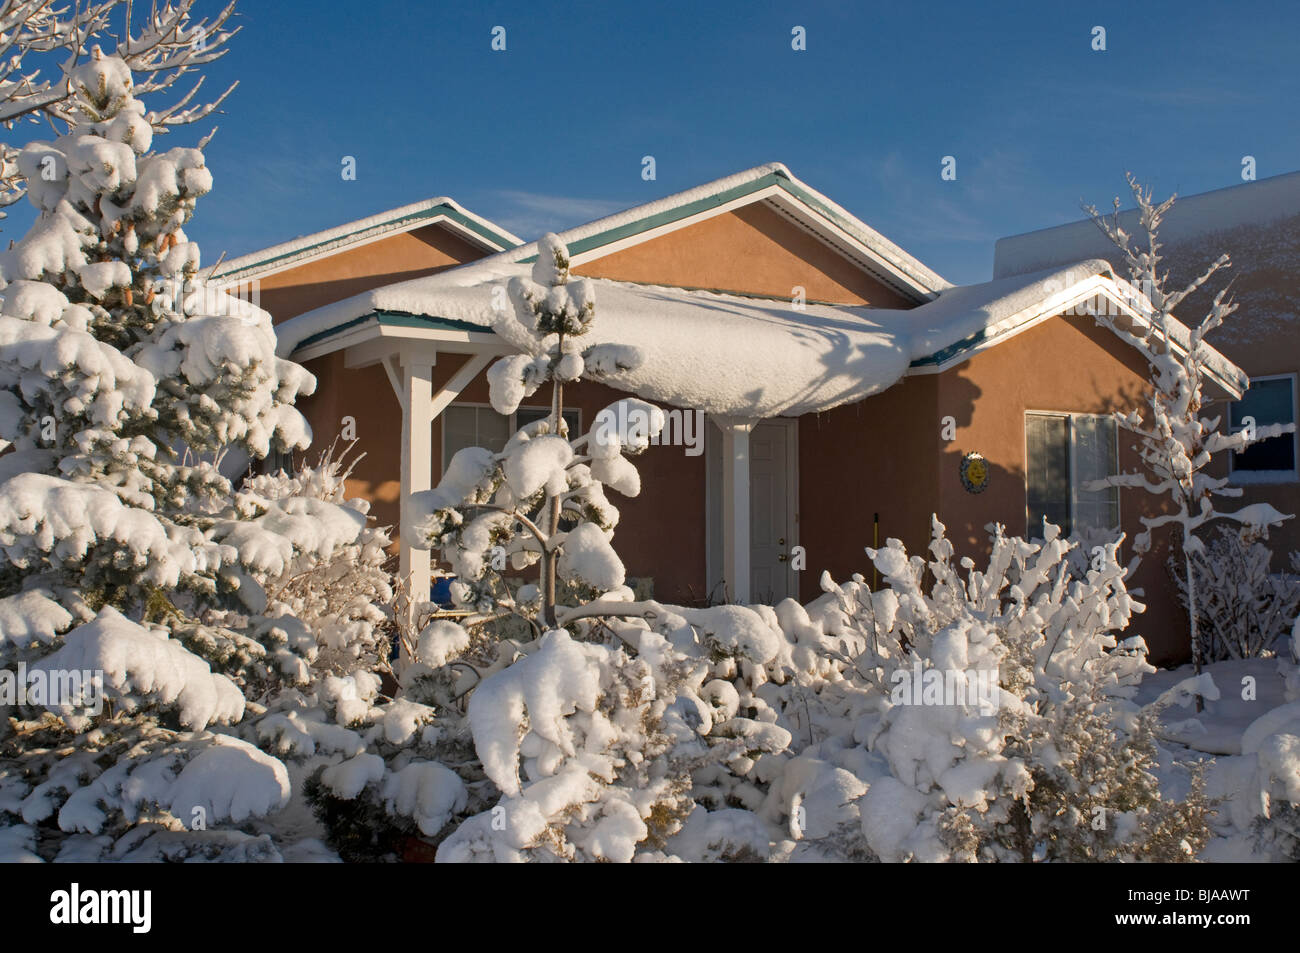 Adobe-Stil Haus im Winter in Santa Fe, New Mexico Stockfoto